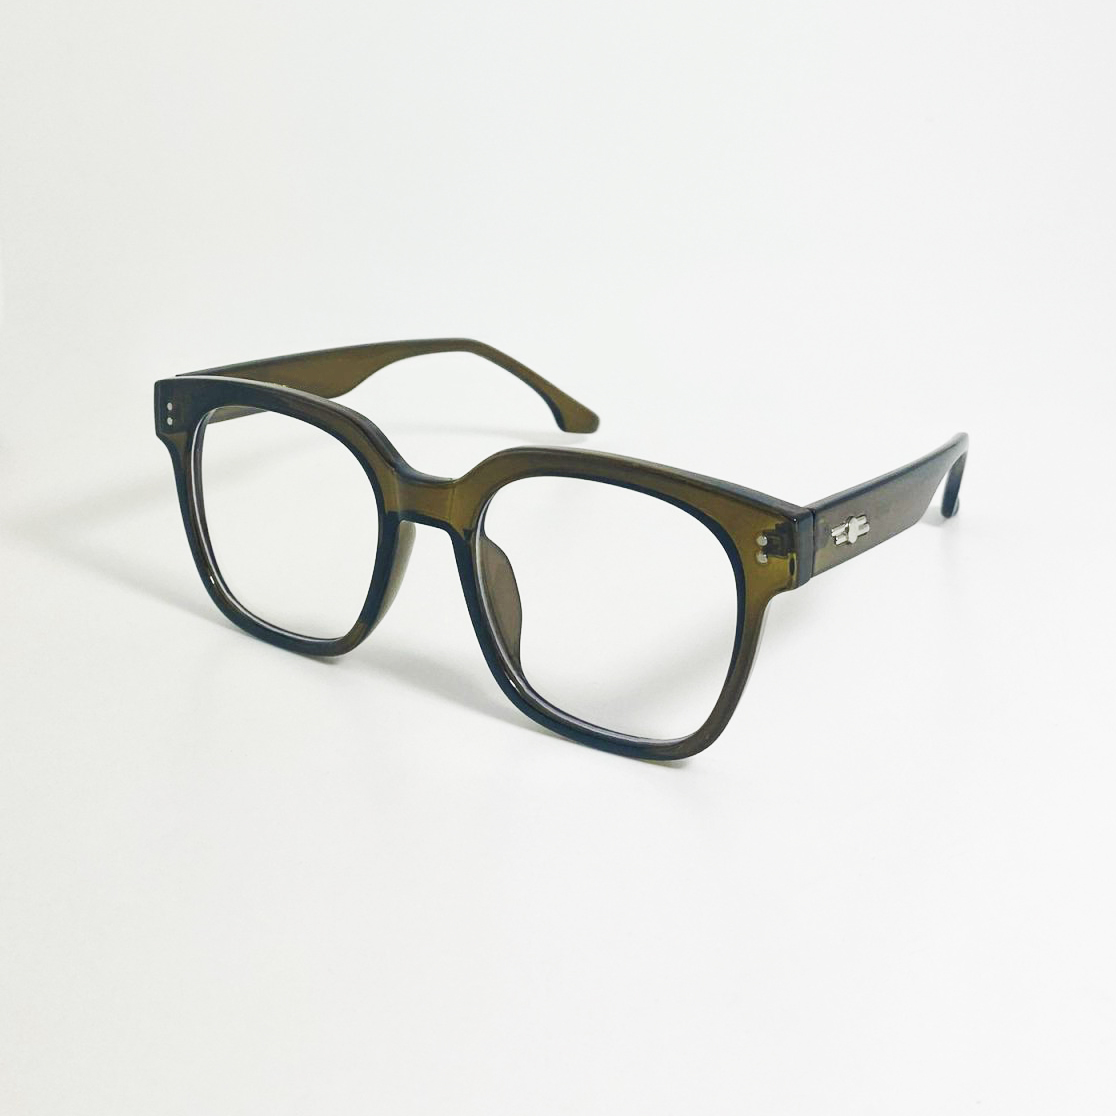 Mắt kính giả cận cao cấp JJUNA315 gọng nhựa dành cho cả nam và nữ - Tròng kính kiểu dáng mới lạ phù hợp với mọi lứa tuổi